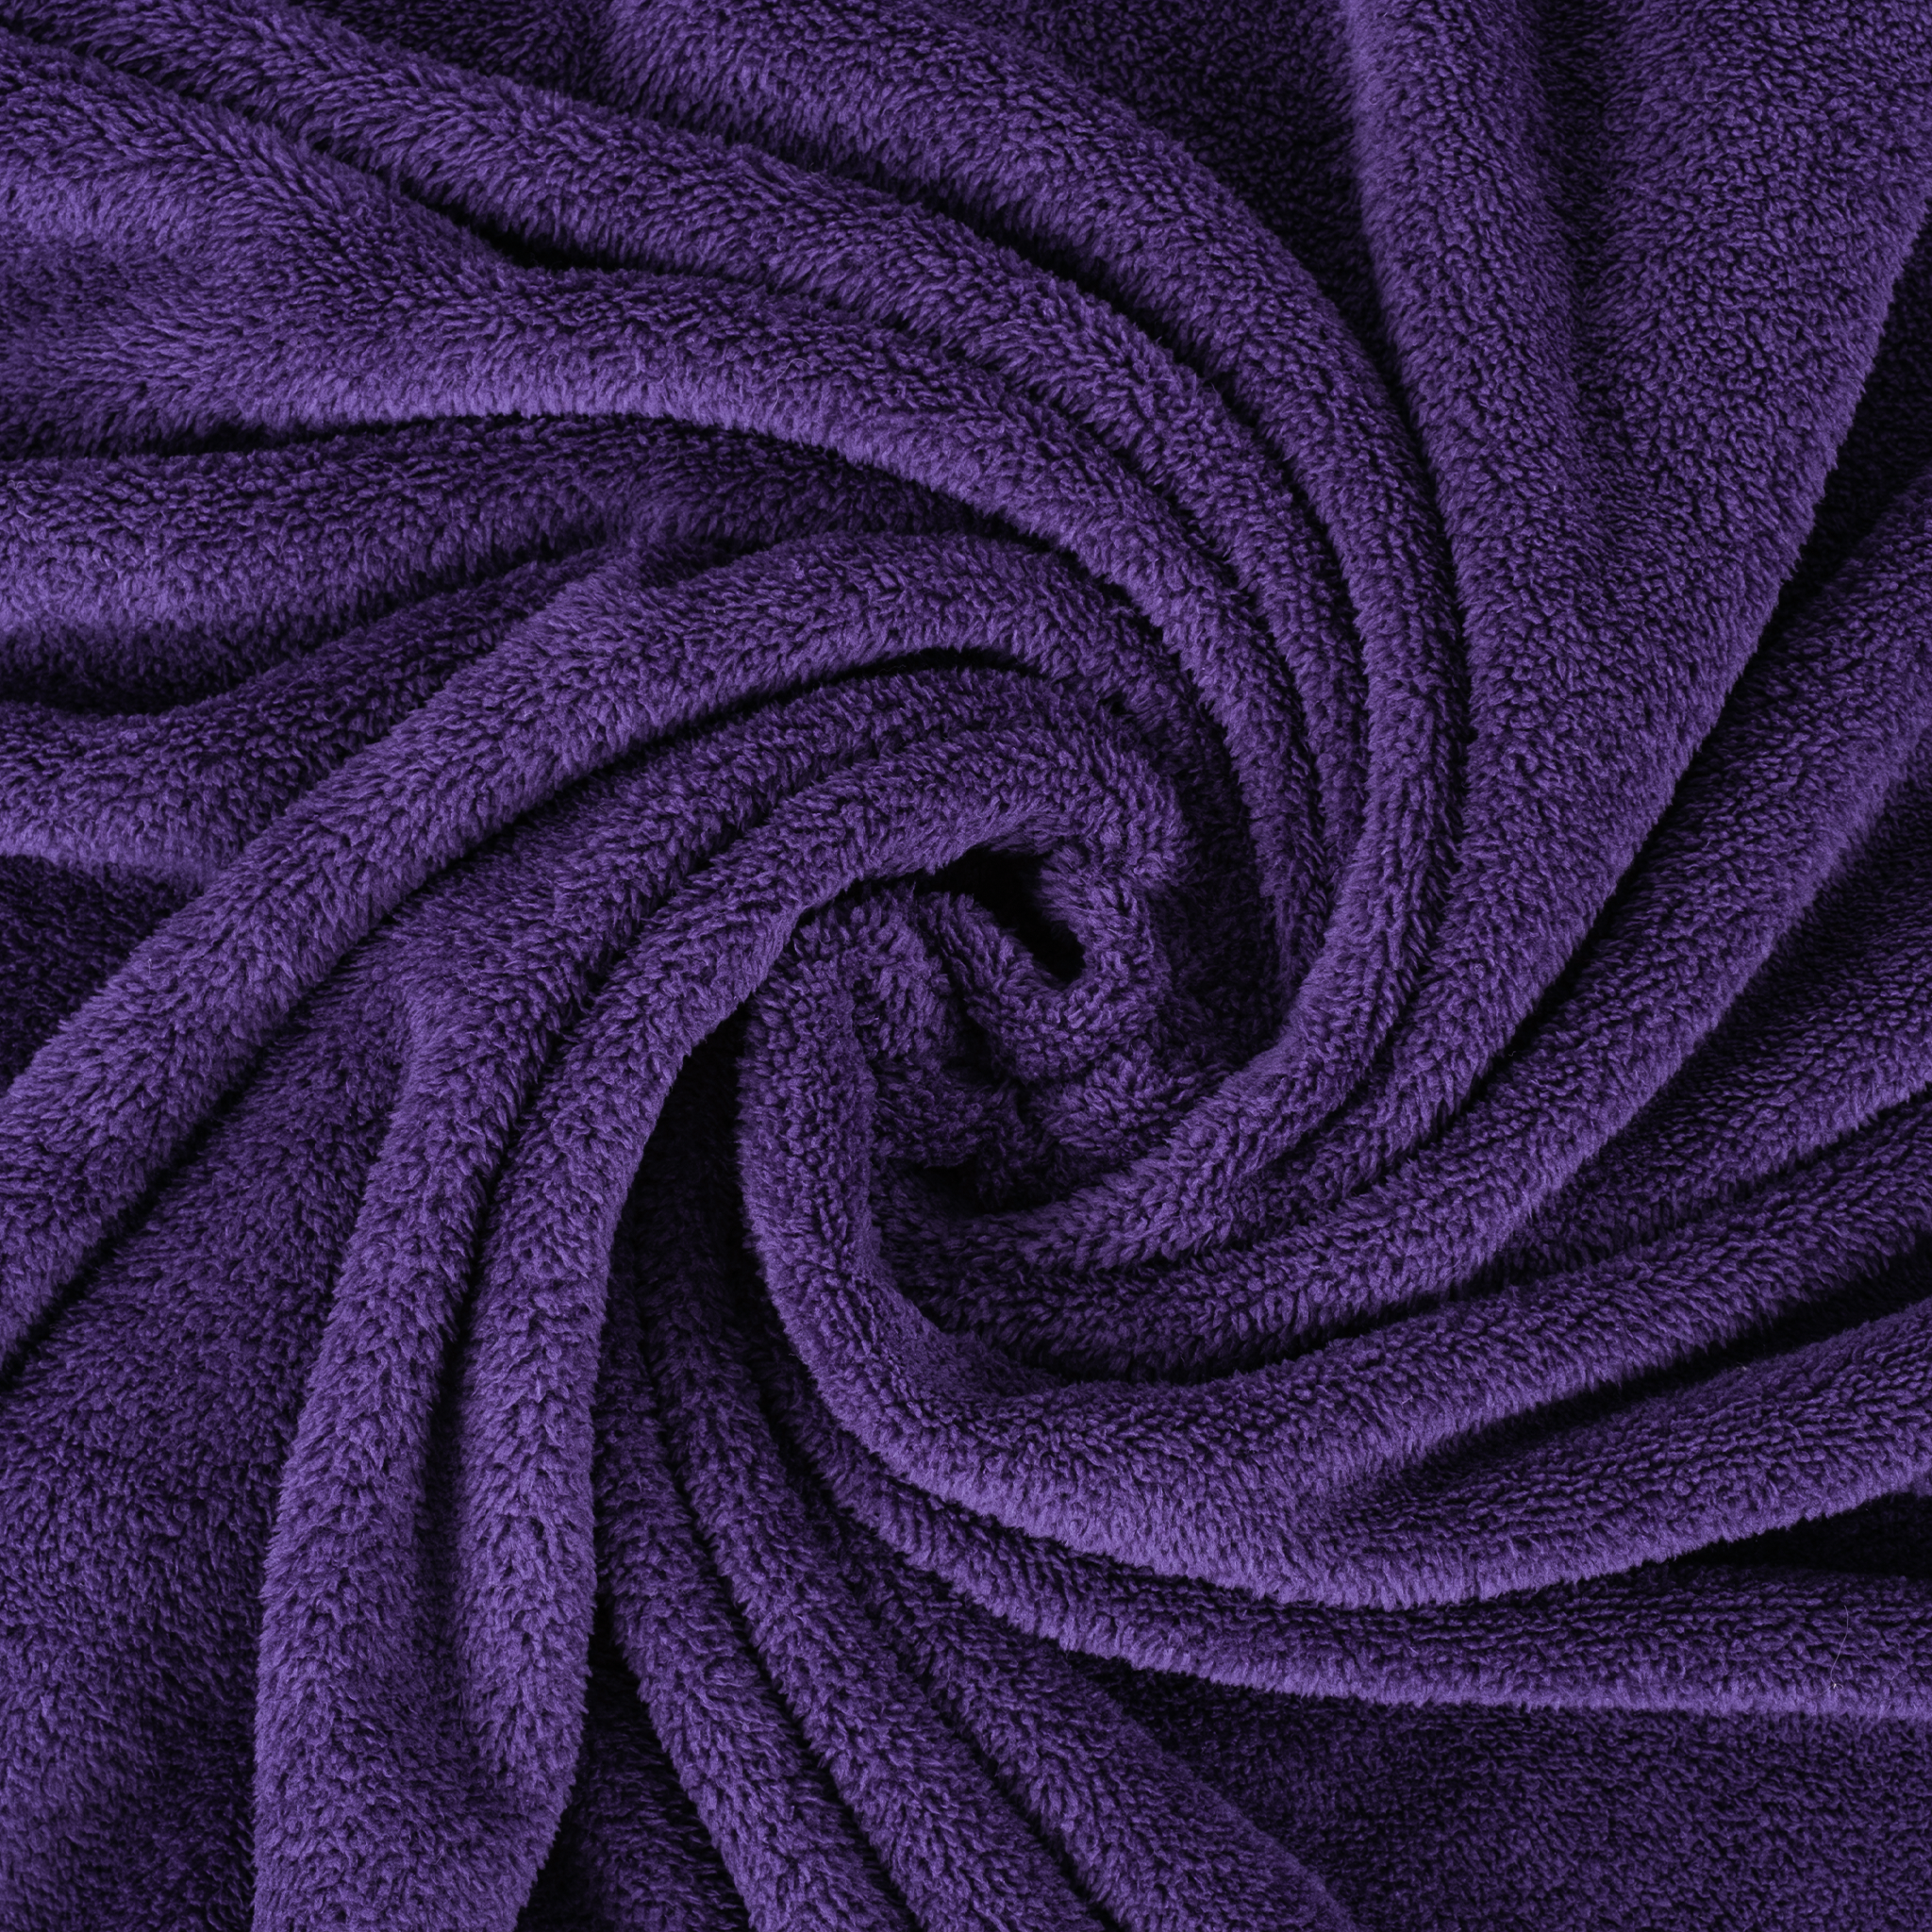 American Soft Linen - Bedding Fleece Blanket - Queen Size 85x90 inches - Purple - 5